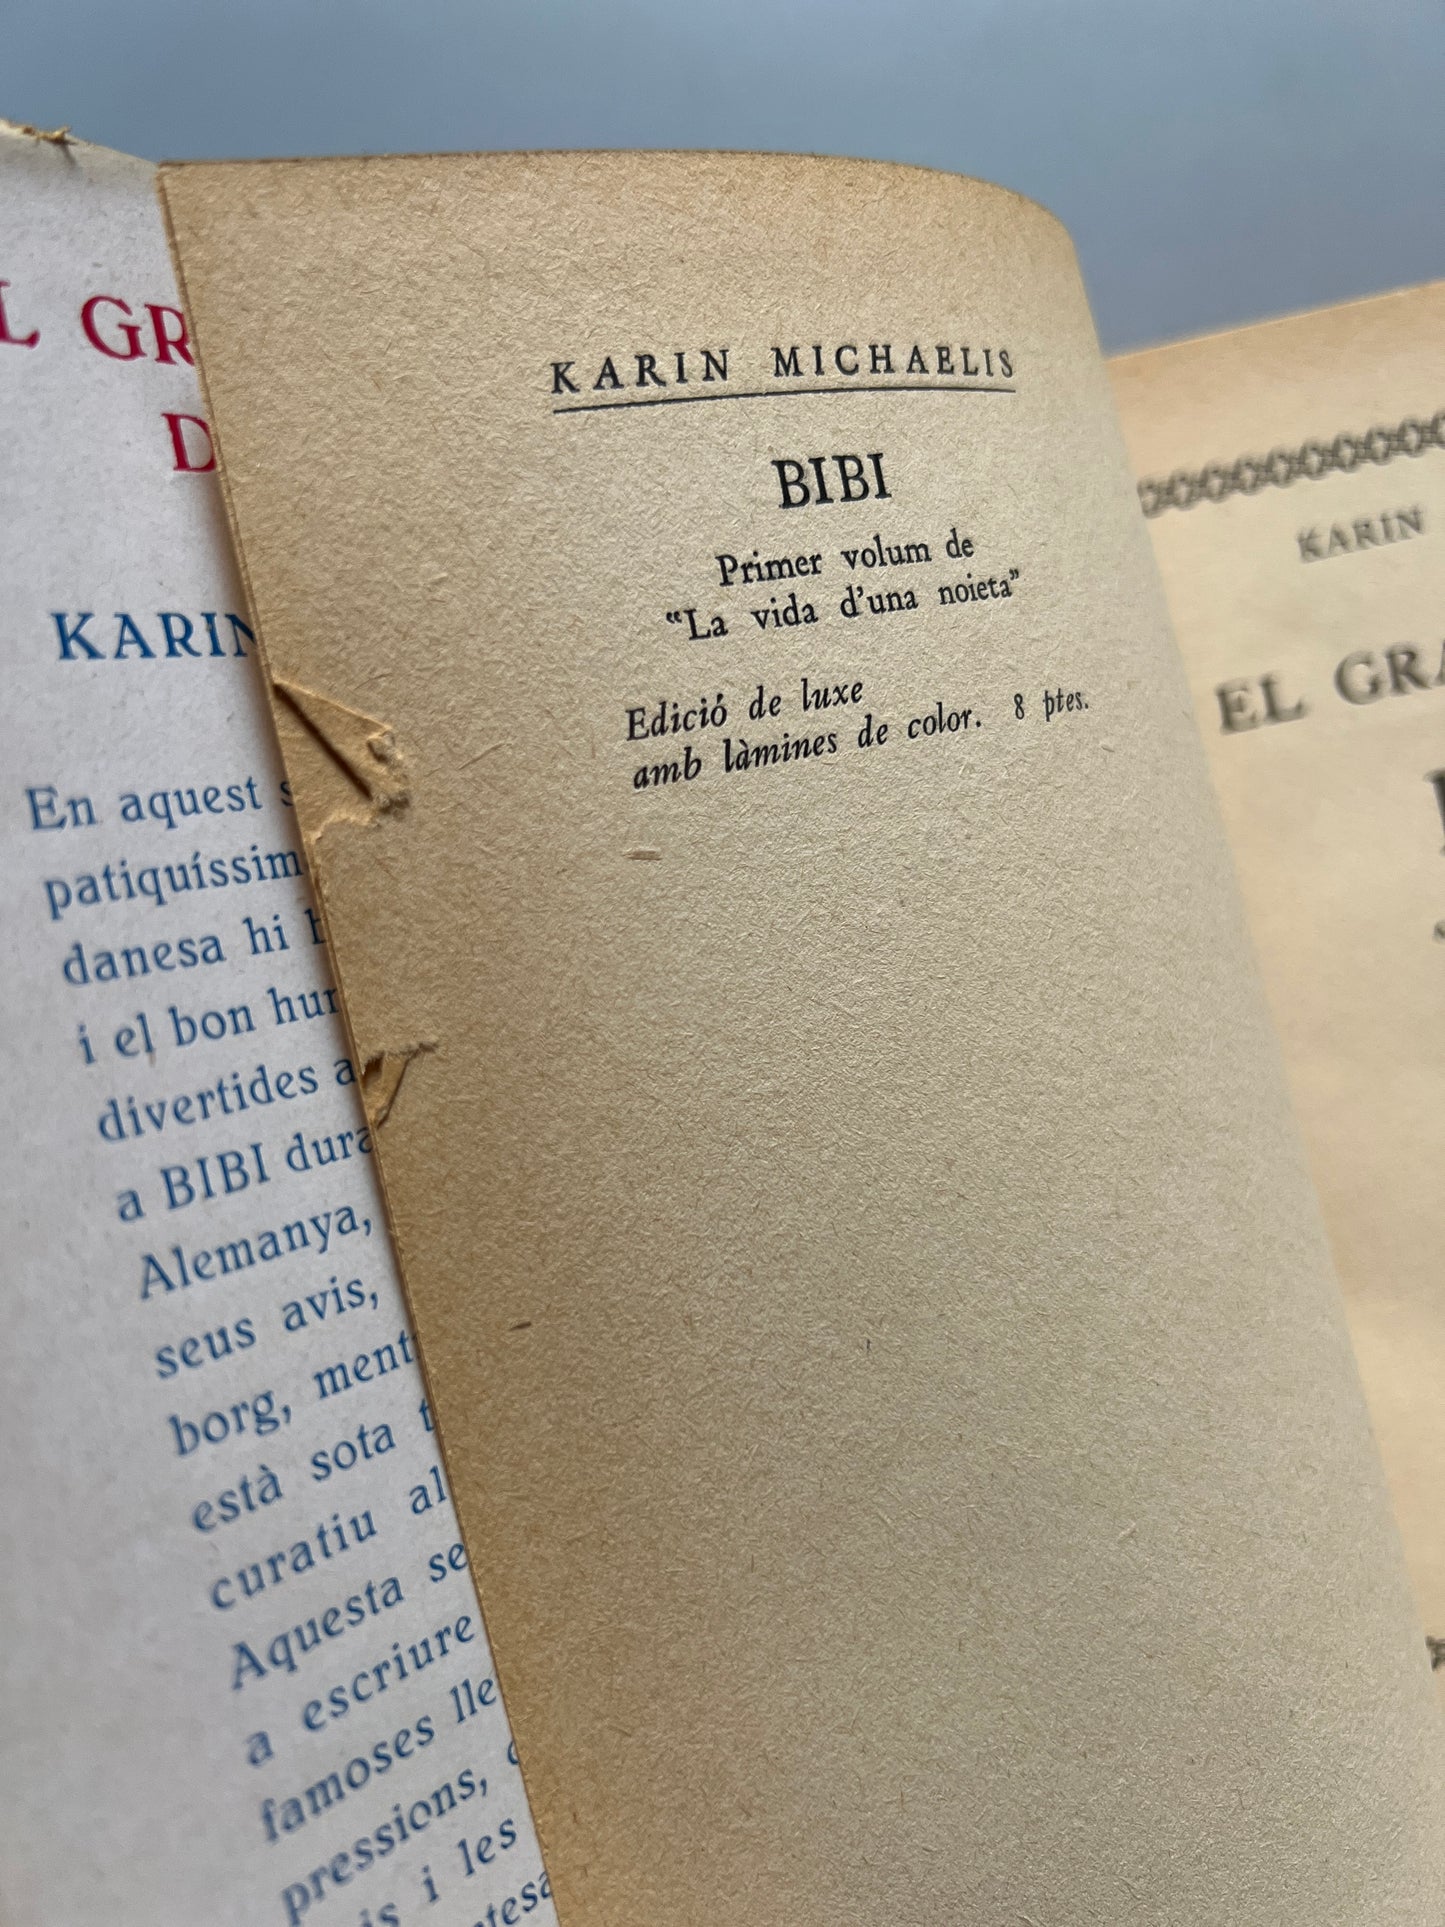 El gran viatge de Bibi, Karin Michels - Editorial Joventut, 1935